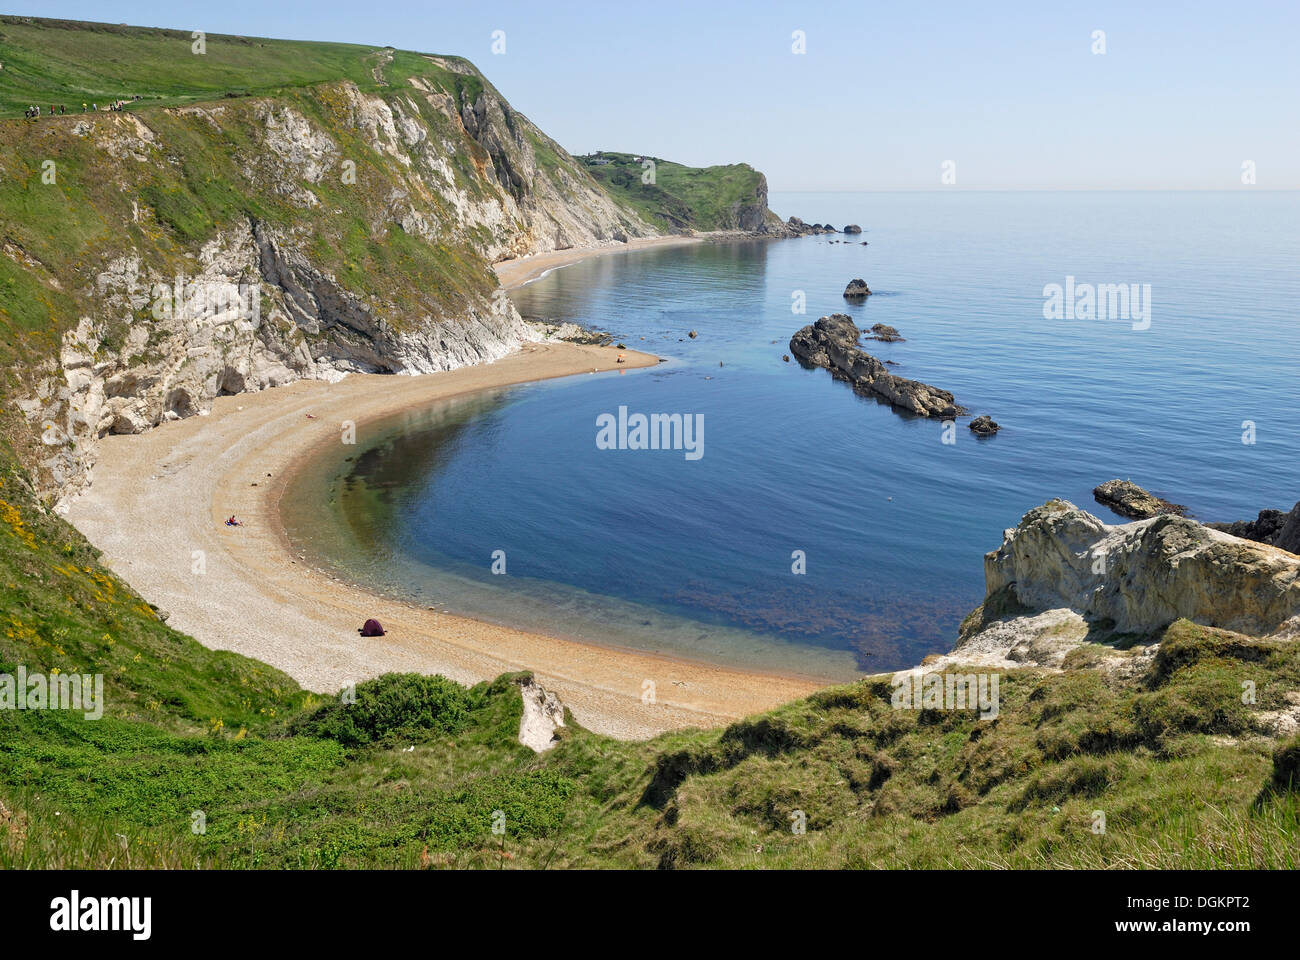 Formazione costiera, UOMO O'guerra Cove, Lulworth, Dorset, Inghilterra meridionale, England, Regno Unito, Europa Foto Stock